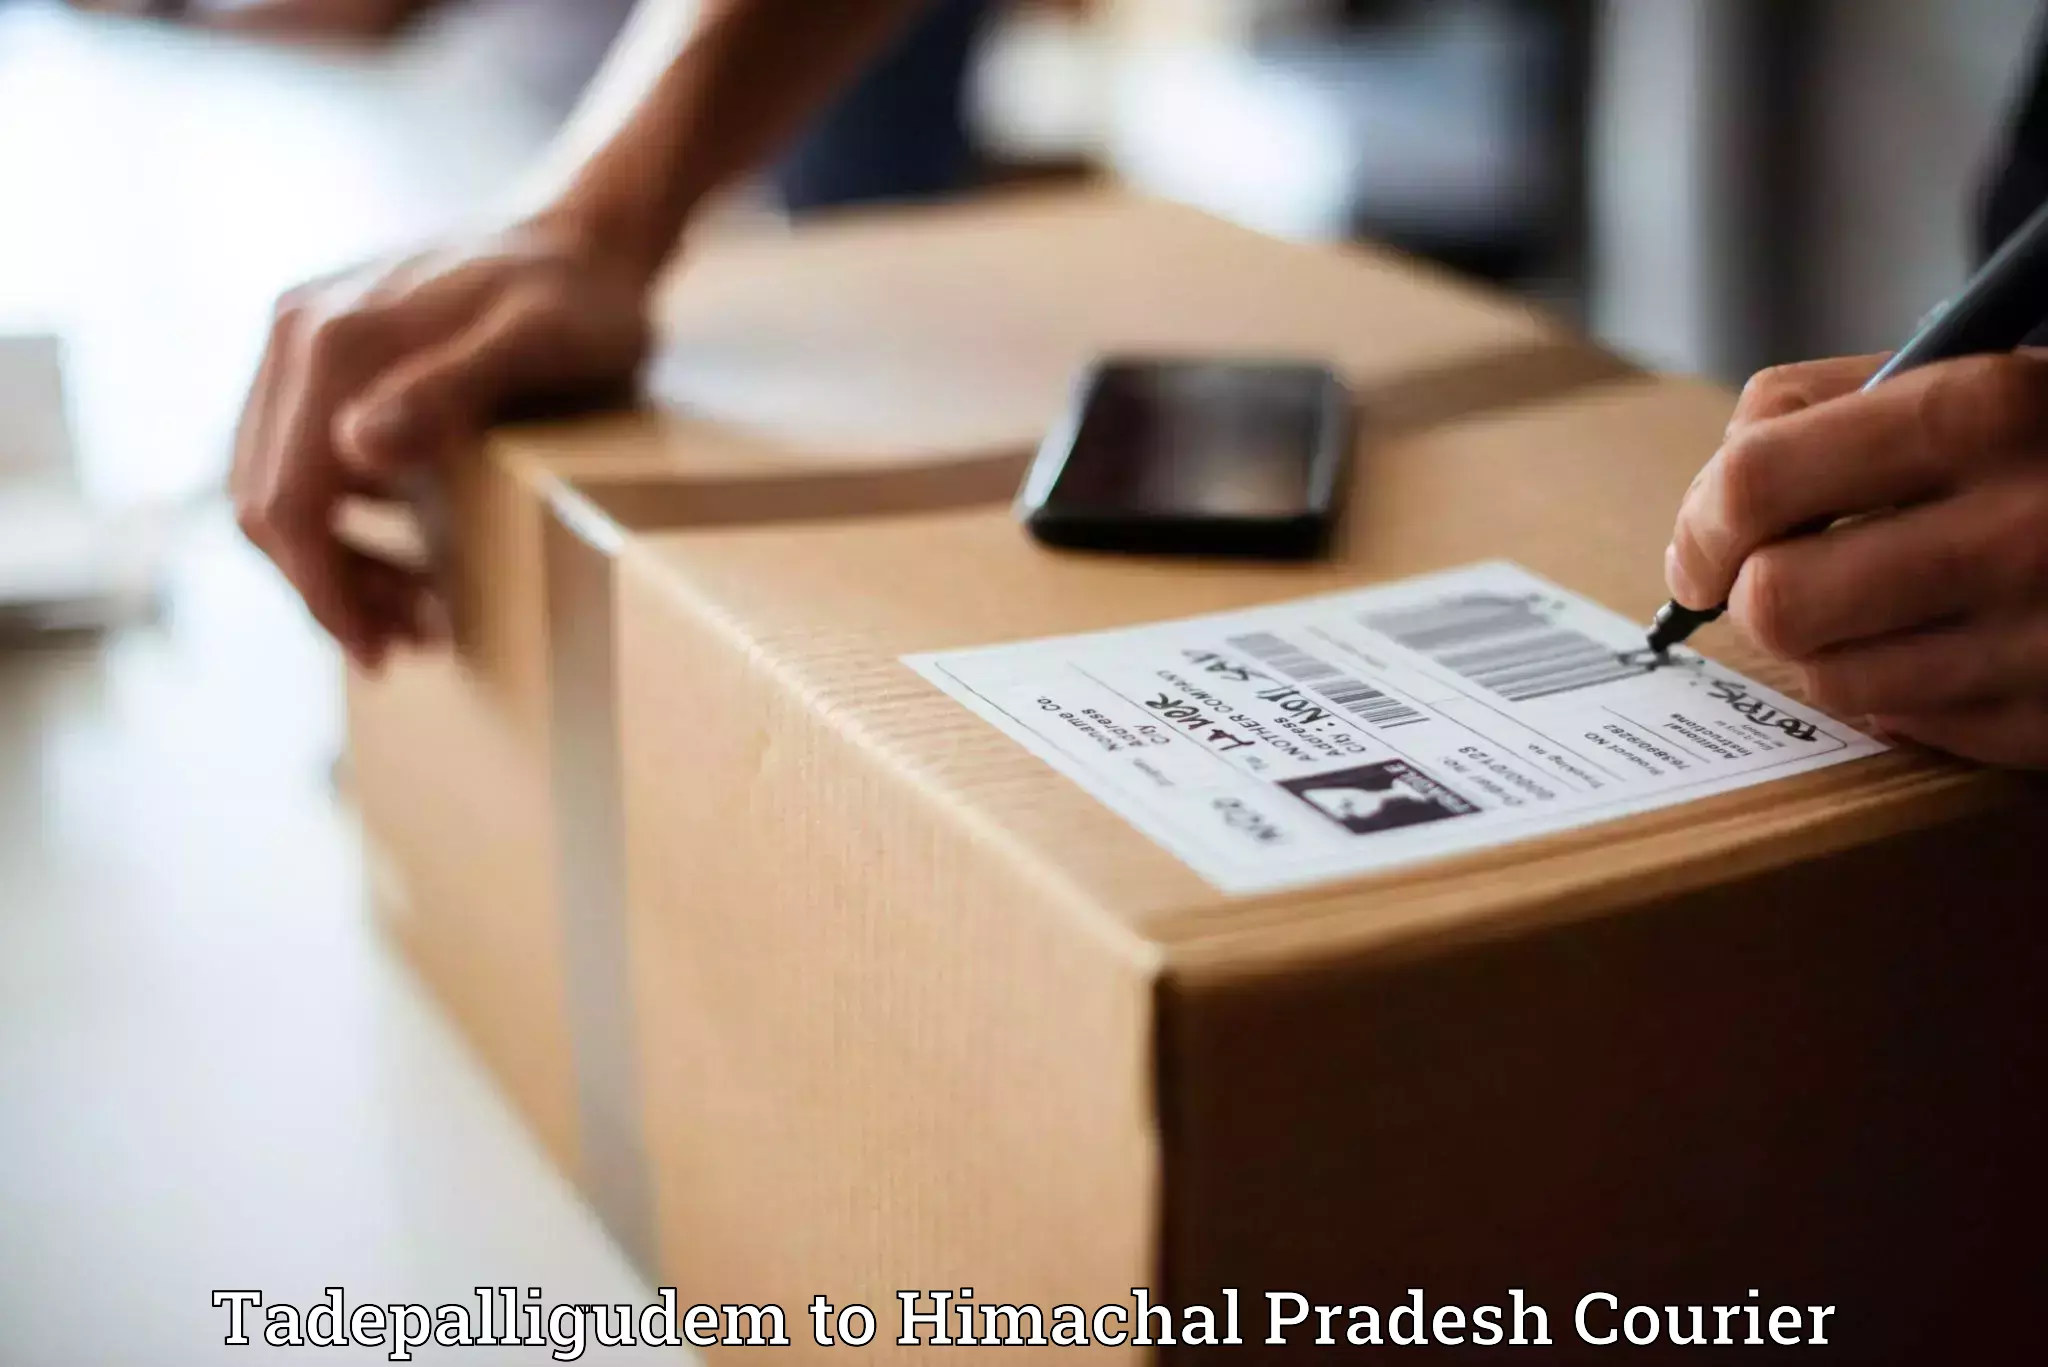 Smart parcel delivery Tadepalligudem to Hamirpur Himachal